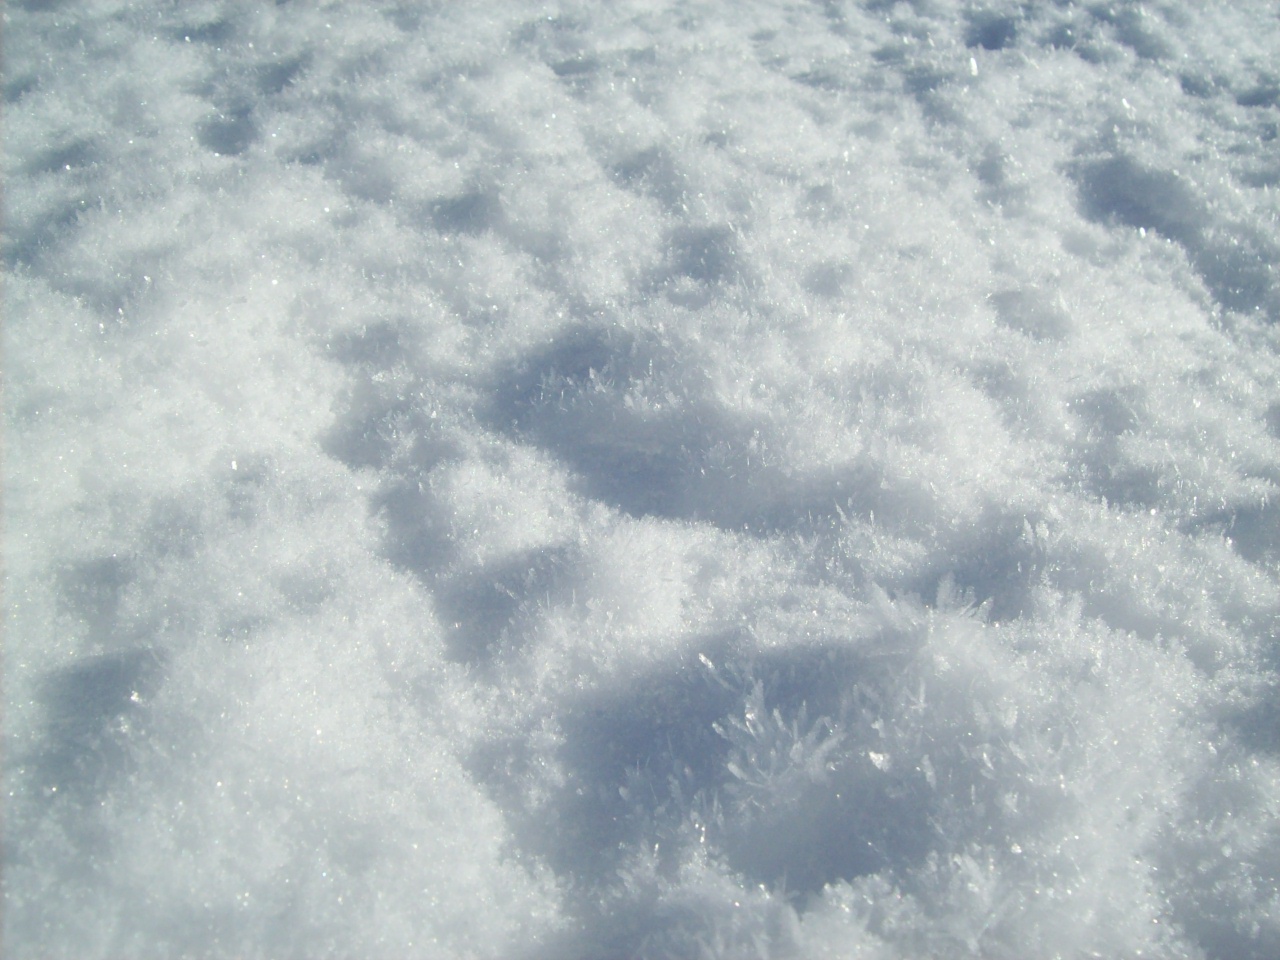 snow pile clipart - photo #16